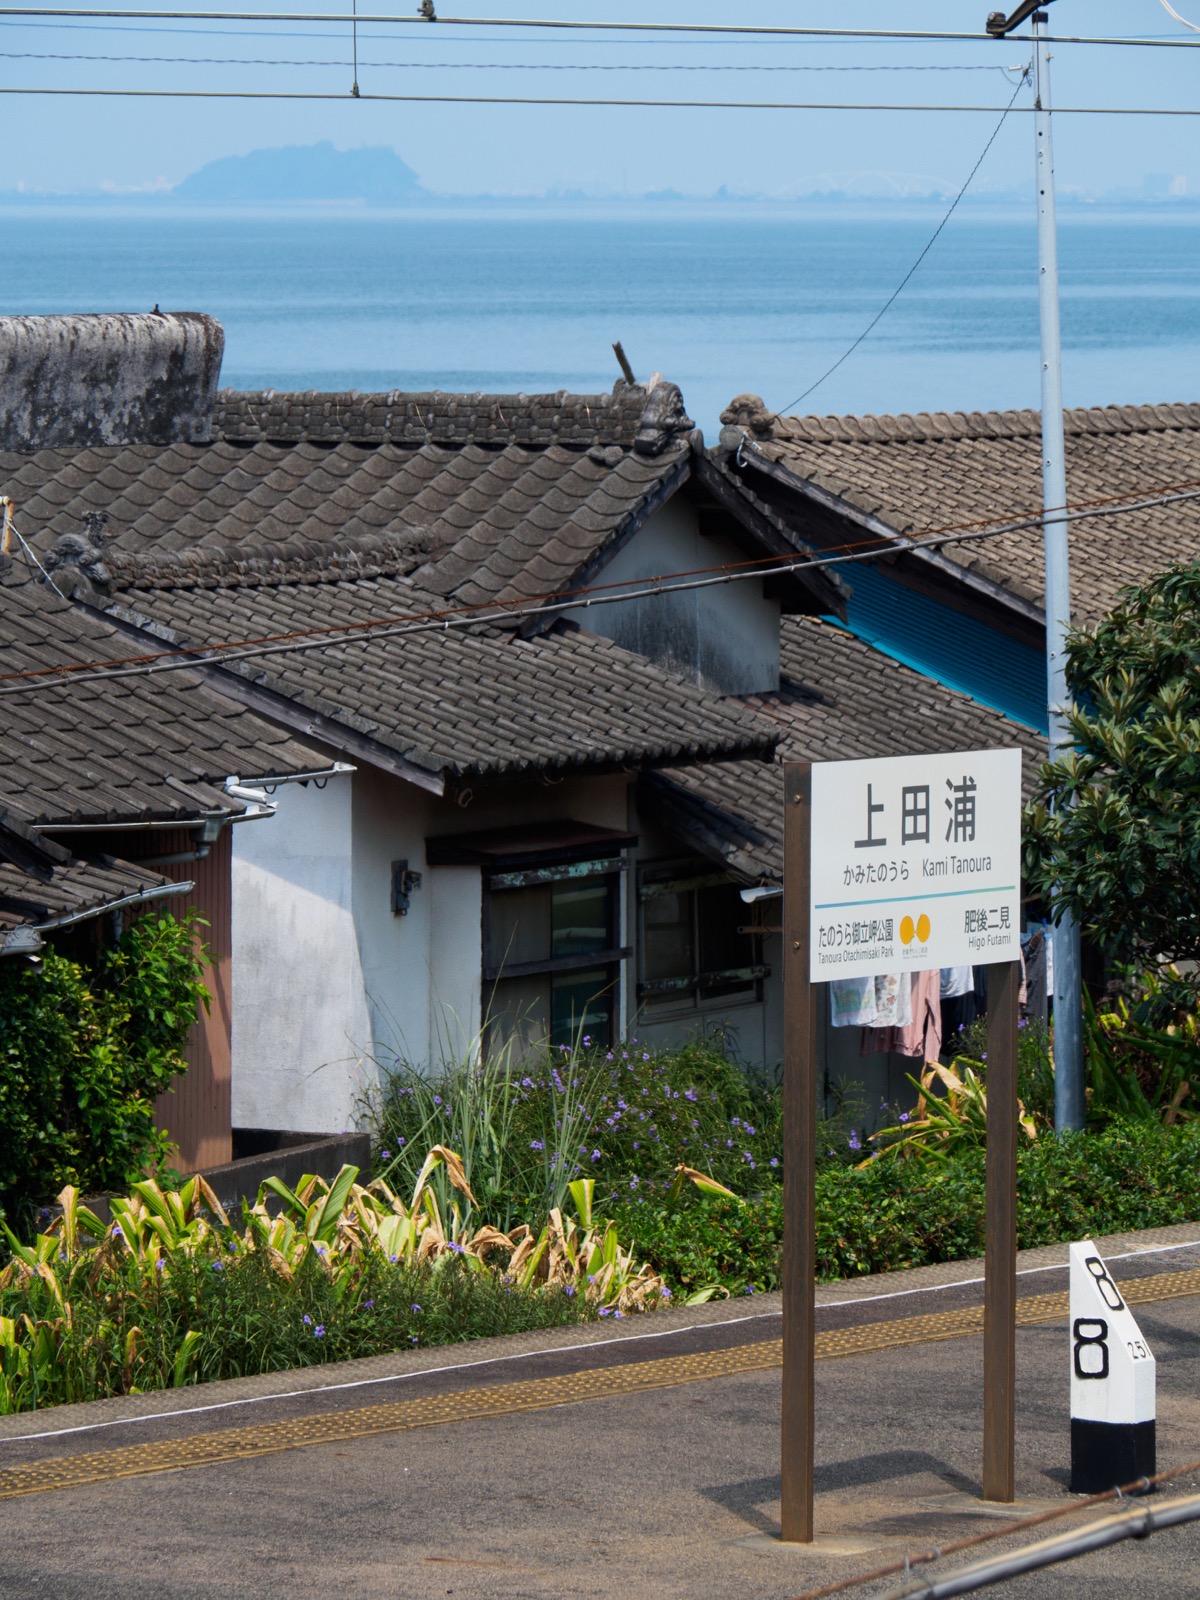 上田浦駅の跨線橋から見る八代海と天草諸島